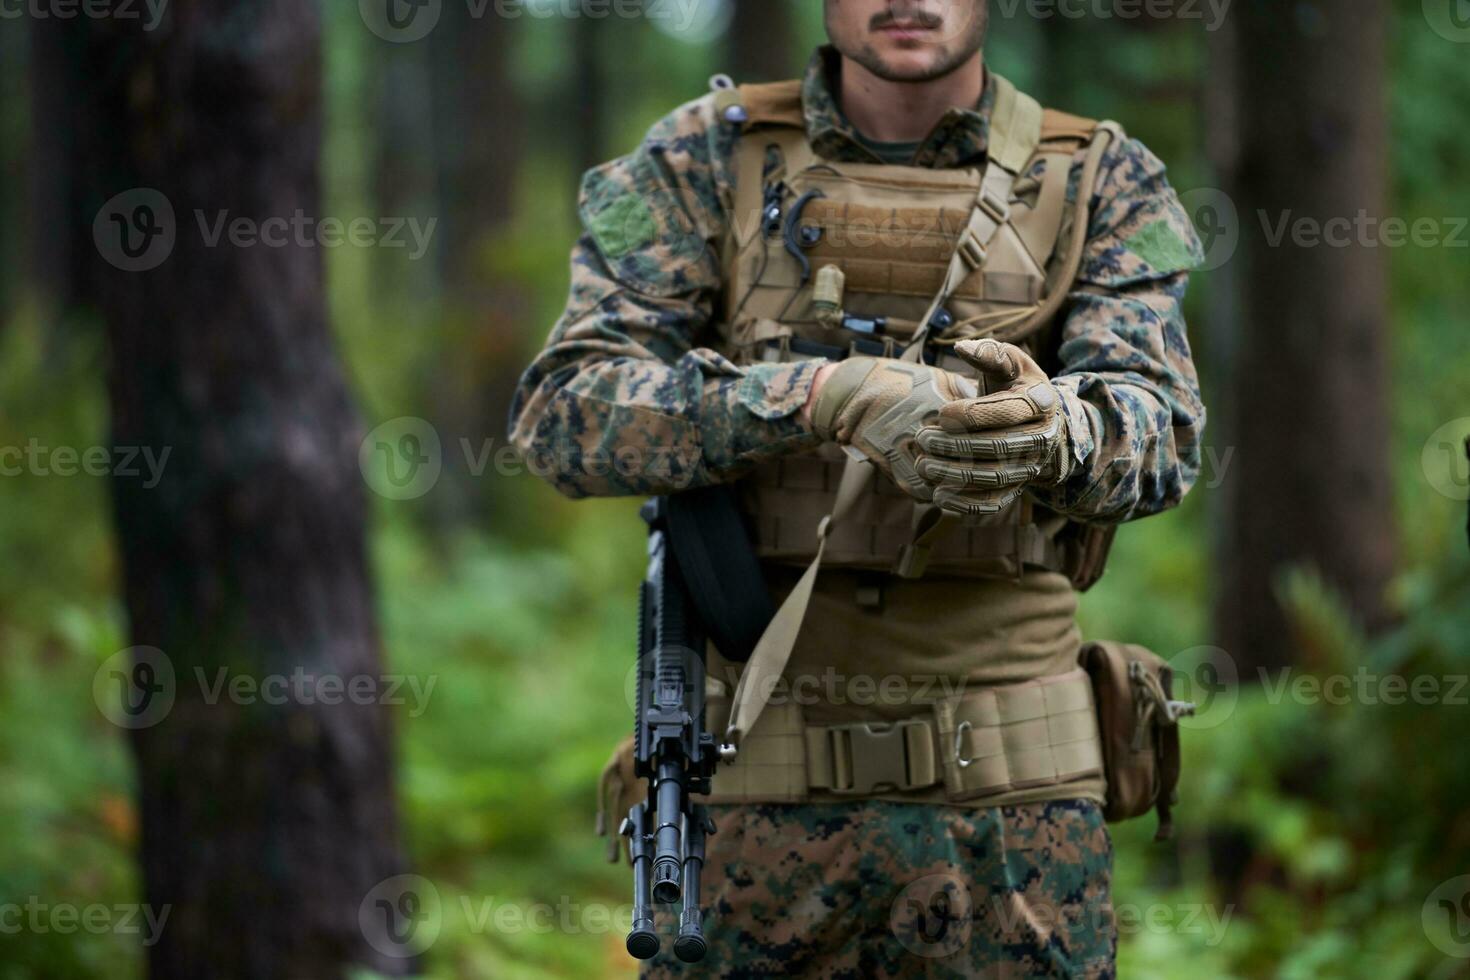 soldat, der taktische und kommunikationsausrüstung für actionkämpfe vorbereitet foto